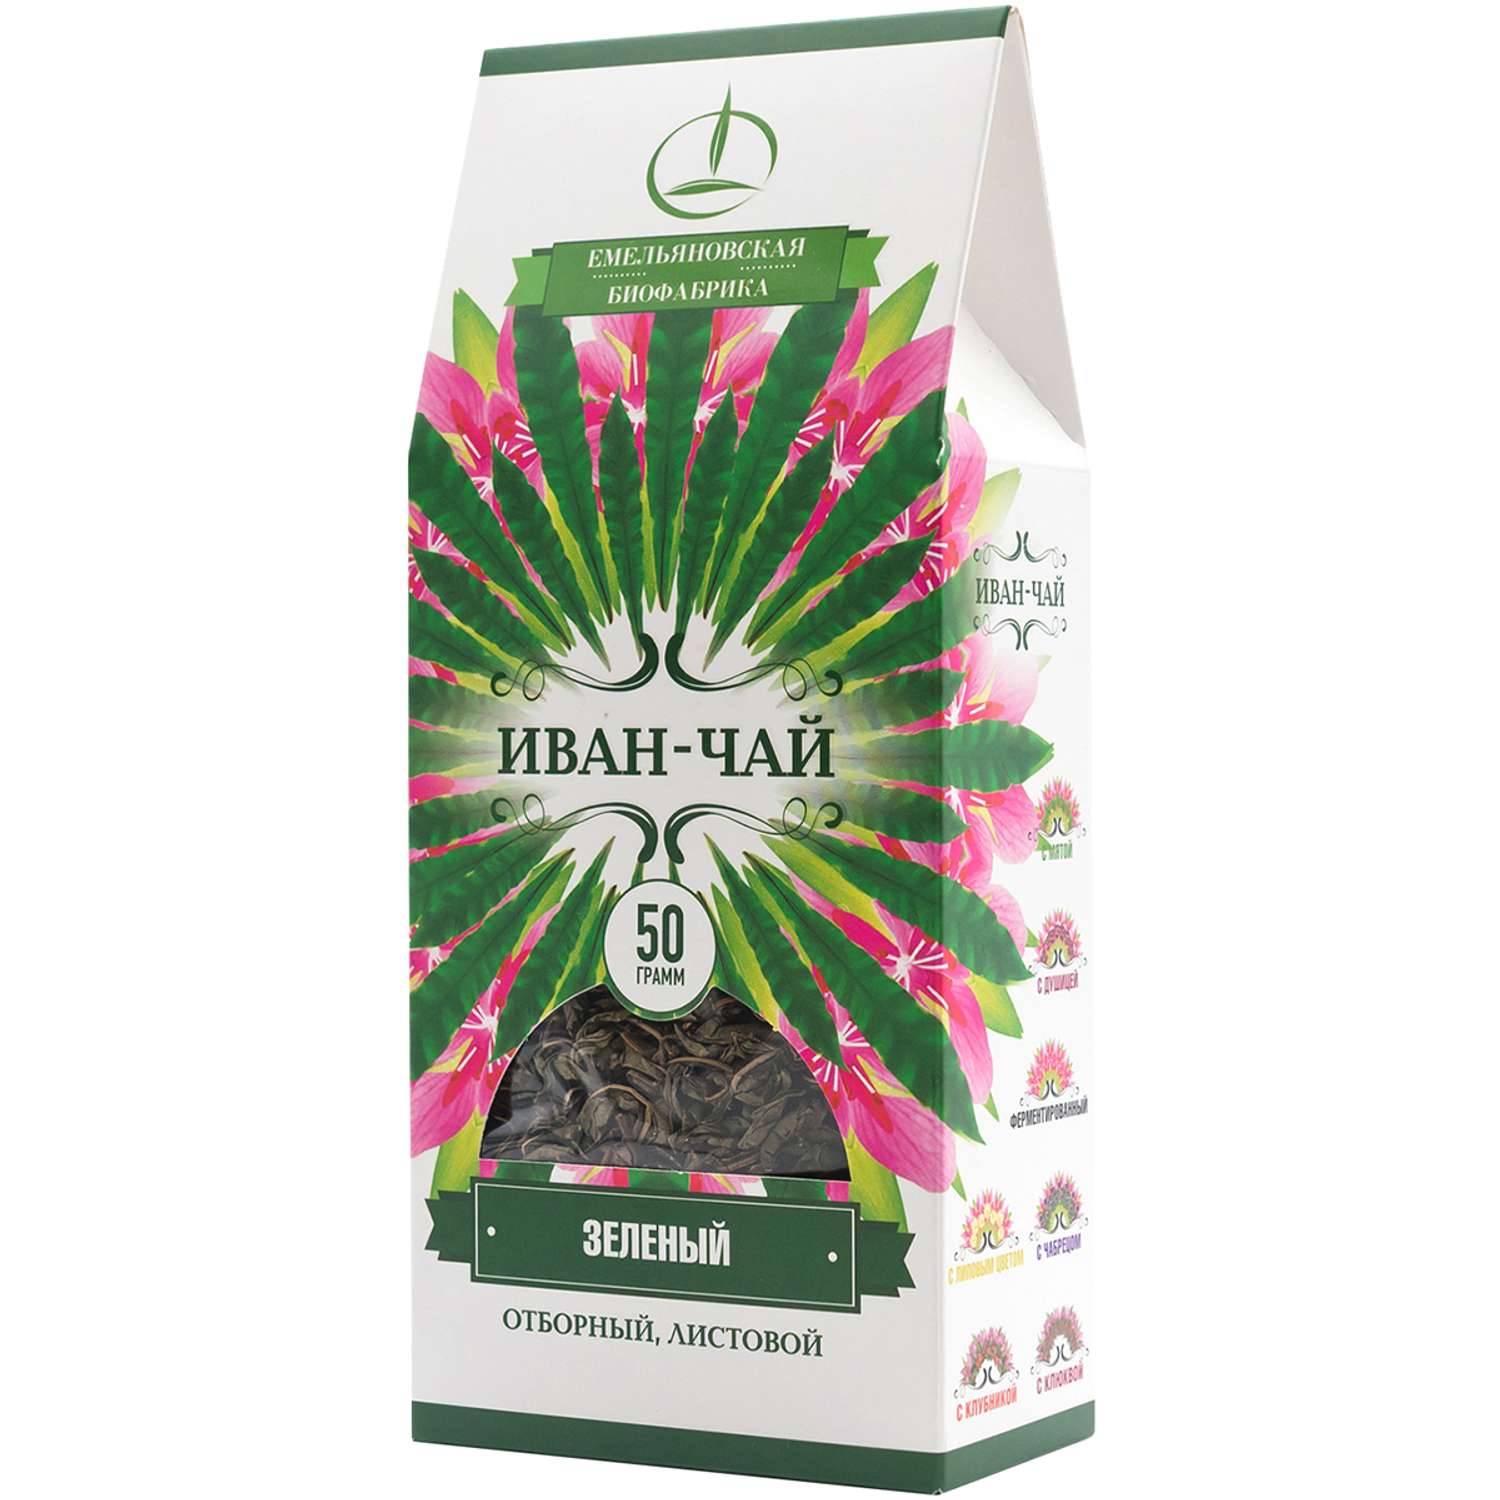 Иван-чай Емельяновская Биофабрика зеленый листовой 50 г - фото 2